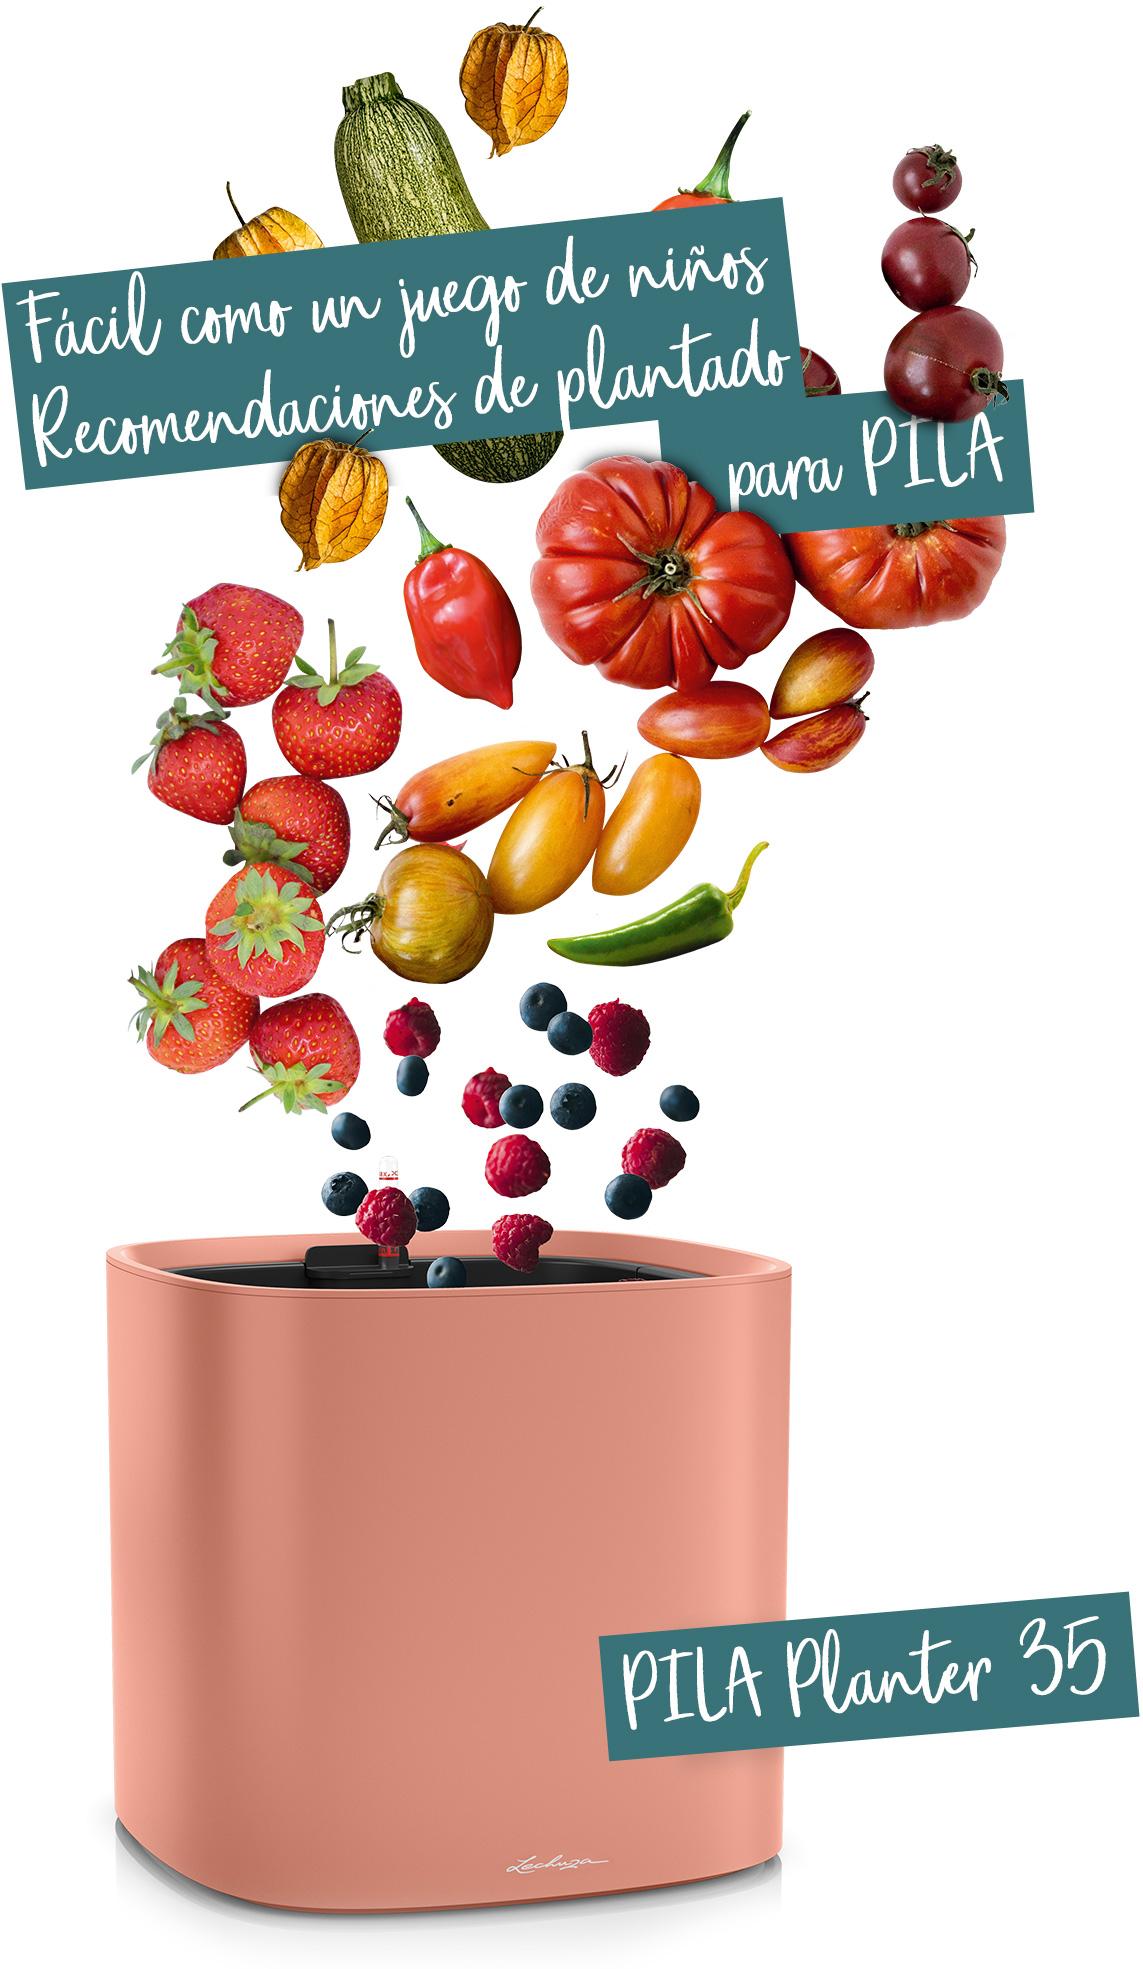 PILA Planter 35 recomendado para frutas y verduras